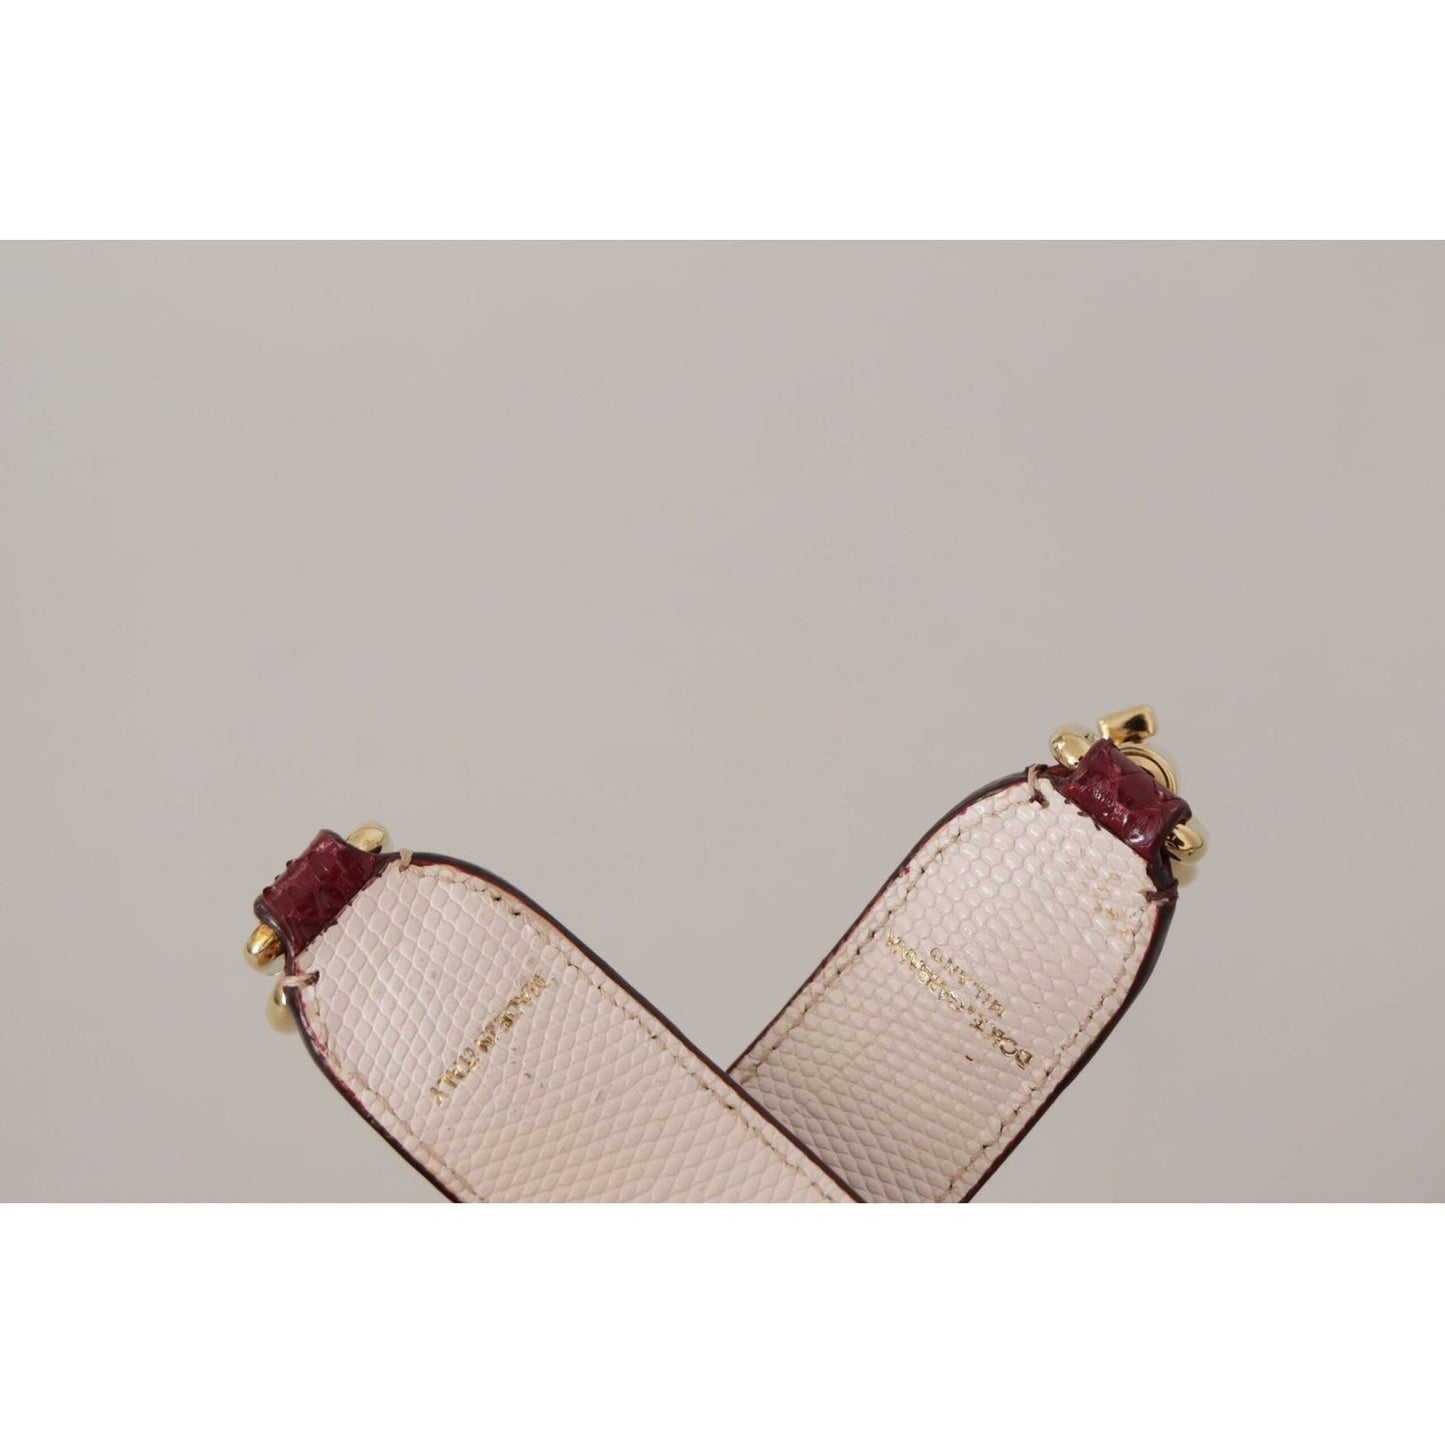 Dolce & Gabbana Elegant Python Leather Bag Strap in Bordeaux bordeaux-leather-crystals-bag-shoulder-strap